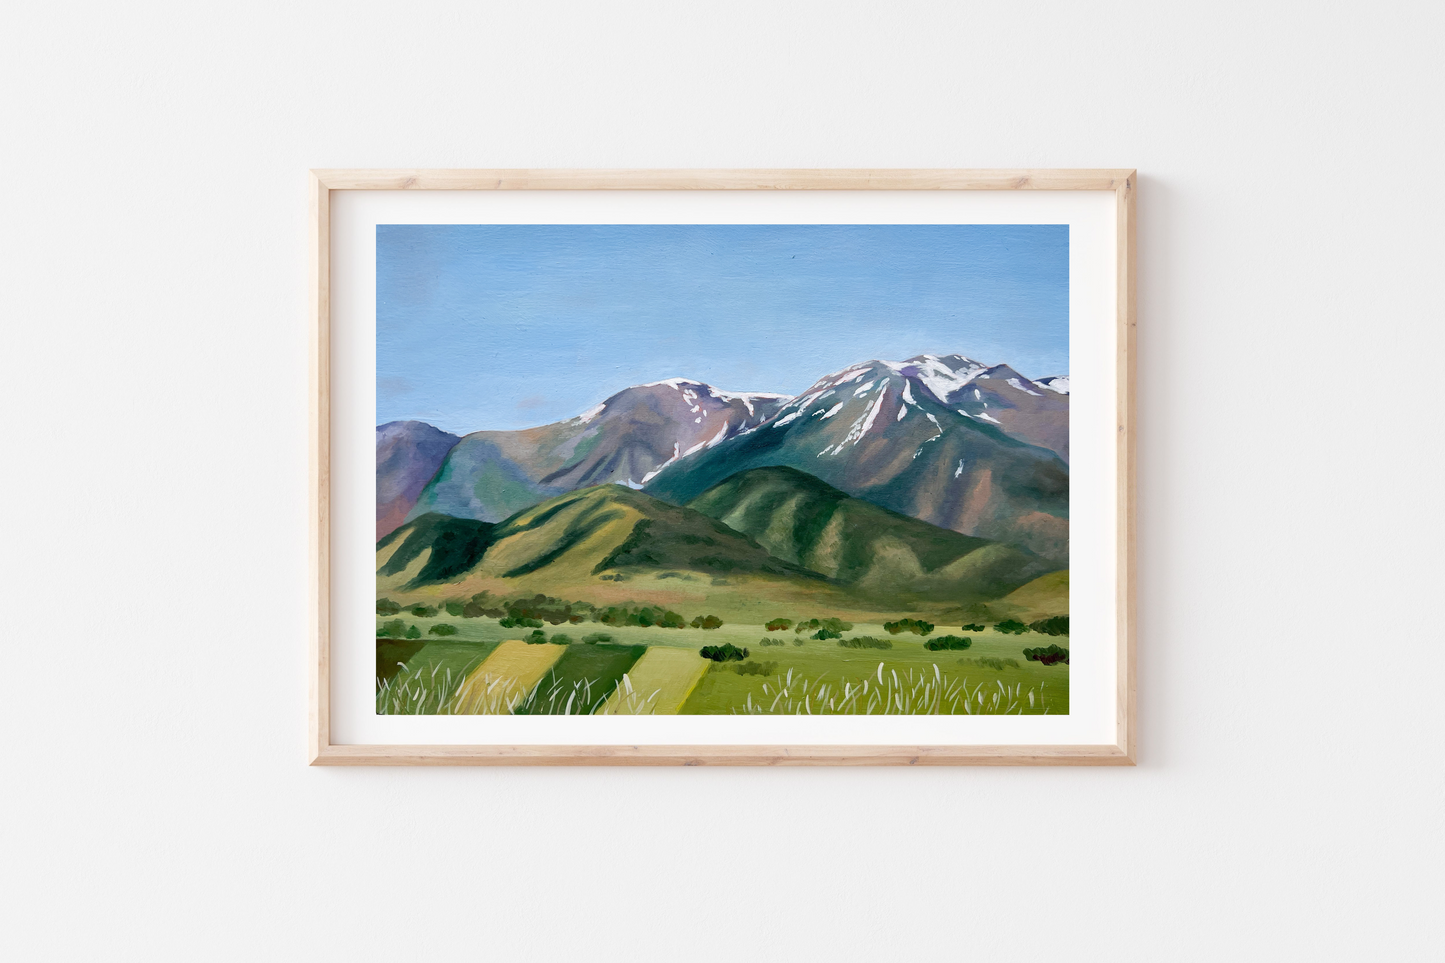 'Our Mountain Home So Dear' Print (Wellsville, Utah)